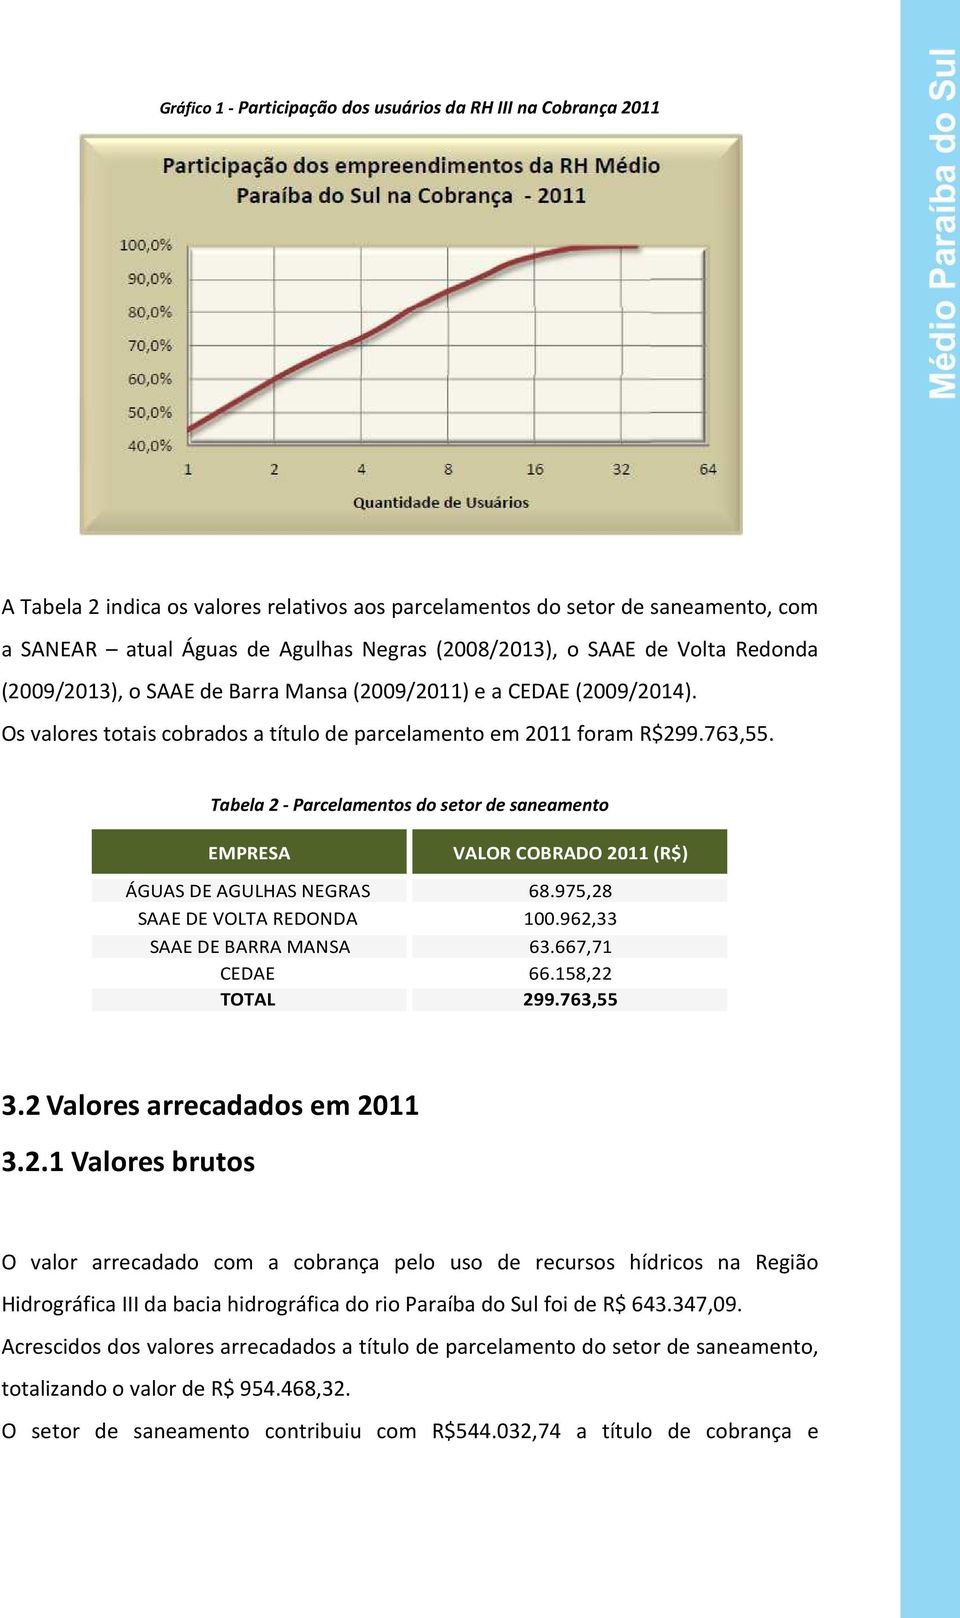 Tabela 2 - Parcelamentos do setor de saneamento EMPRESA VALOR COBRADO 2011 (R$) ÁGUAS DE AGULHAS NEGRAS 68.975,28 SAAE DE VOLTA REDONDA 100.962,33 SAAE DE BARRA MANSA 63.667,71 CEDAE 66.